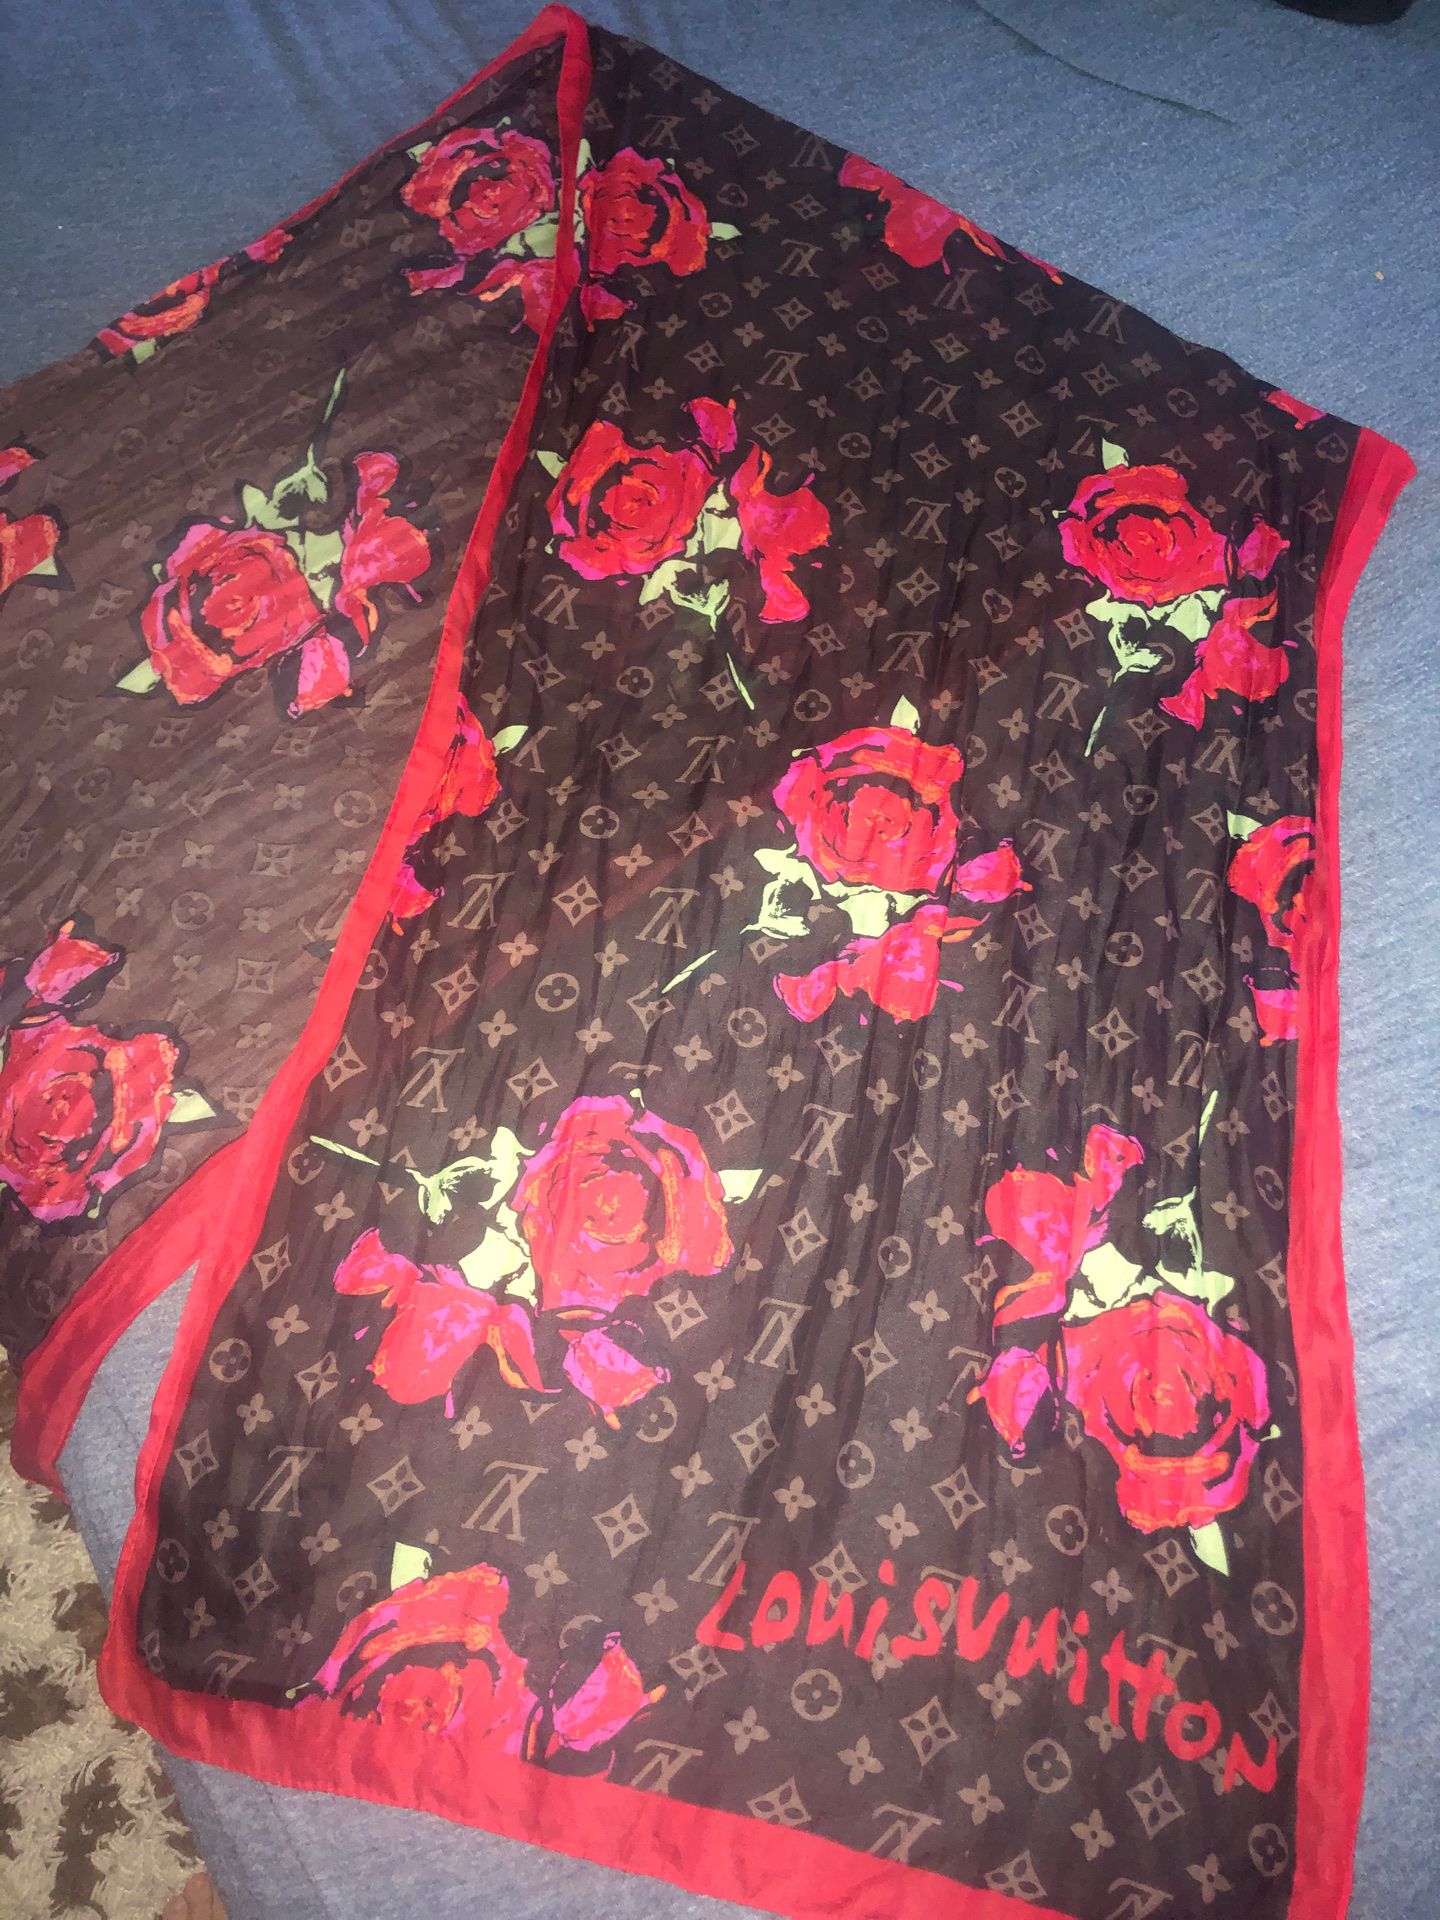 Louis Vuitton rose scarf